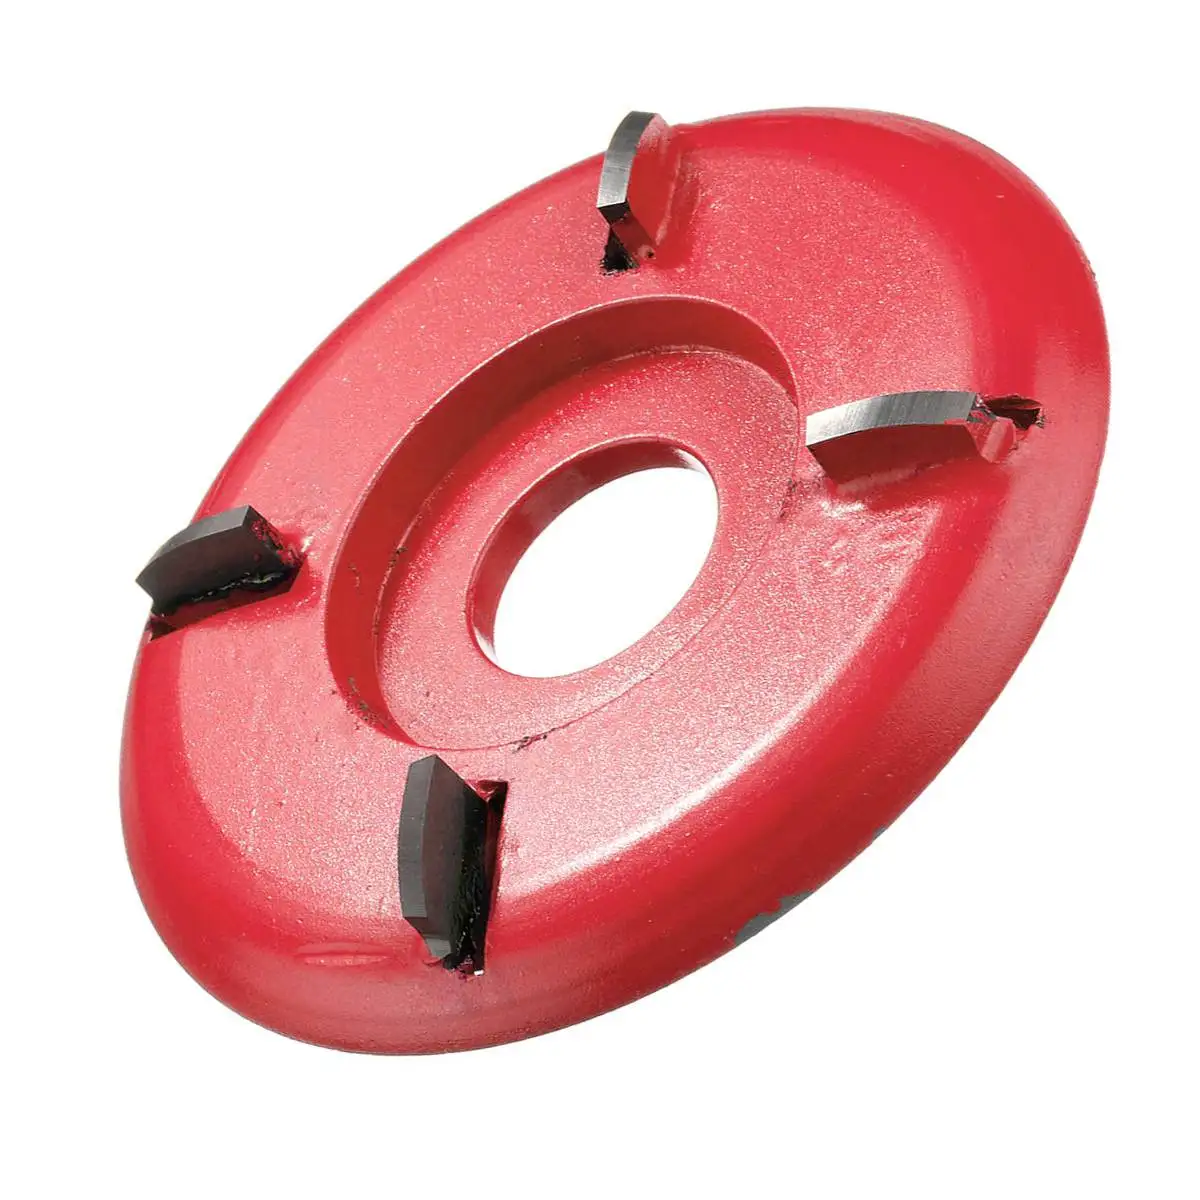 Четырехзуб дуги/плоская плоскость 90 мм резьба по дереву дисковый инструмент фреза для 22 мм Диафрагма угловая шлифовальная машина вложение чайный лоток лезвие - Цвет: ARC Red